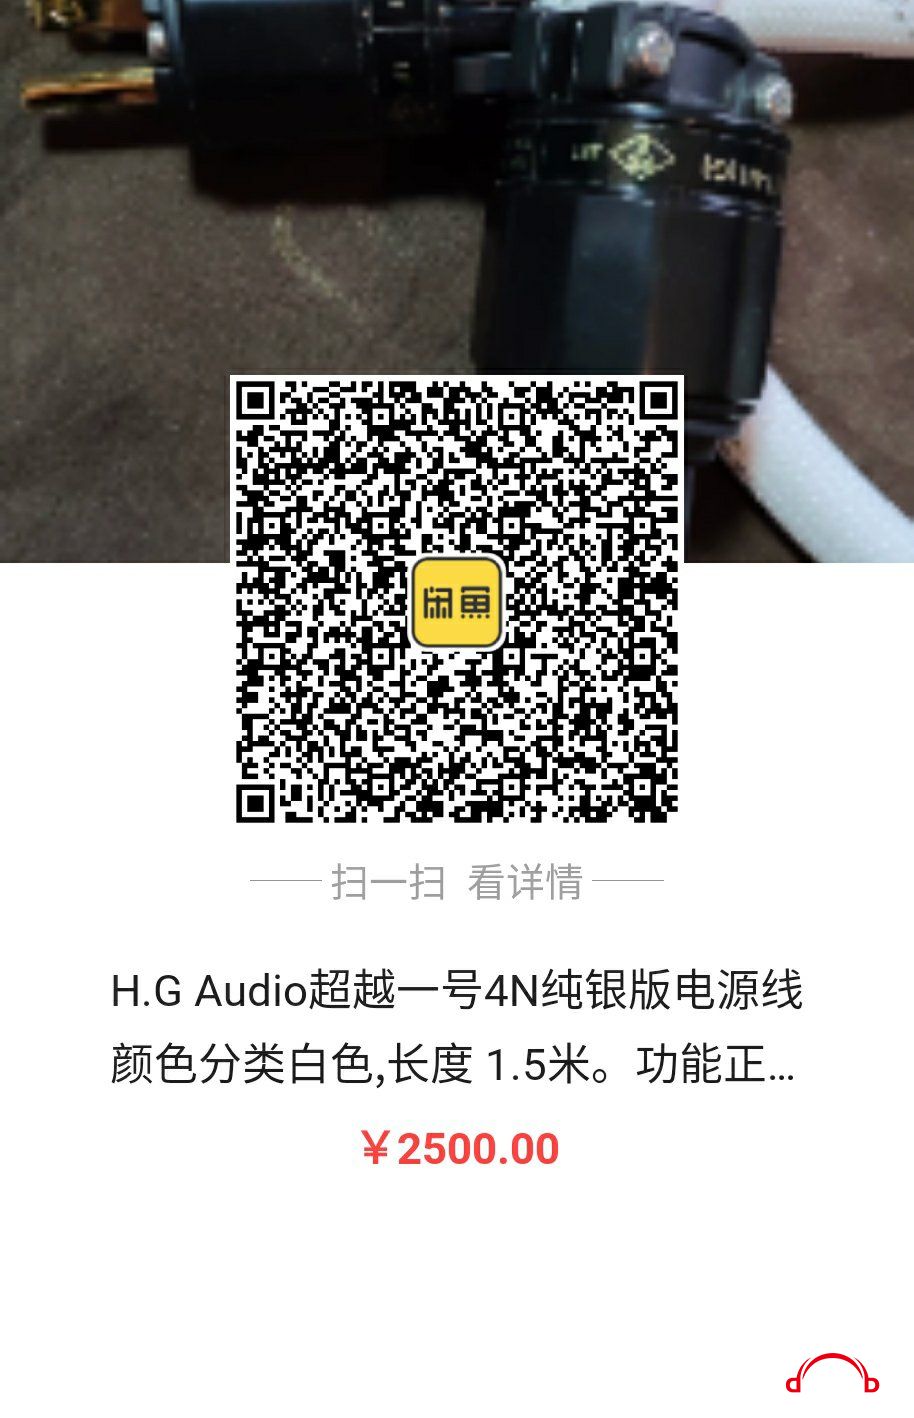 WeChat Image_20191110133641.jpg